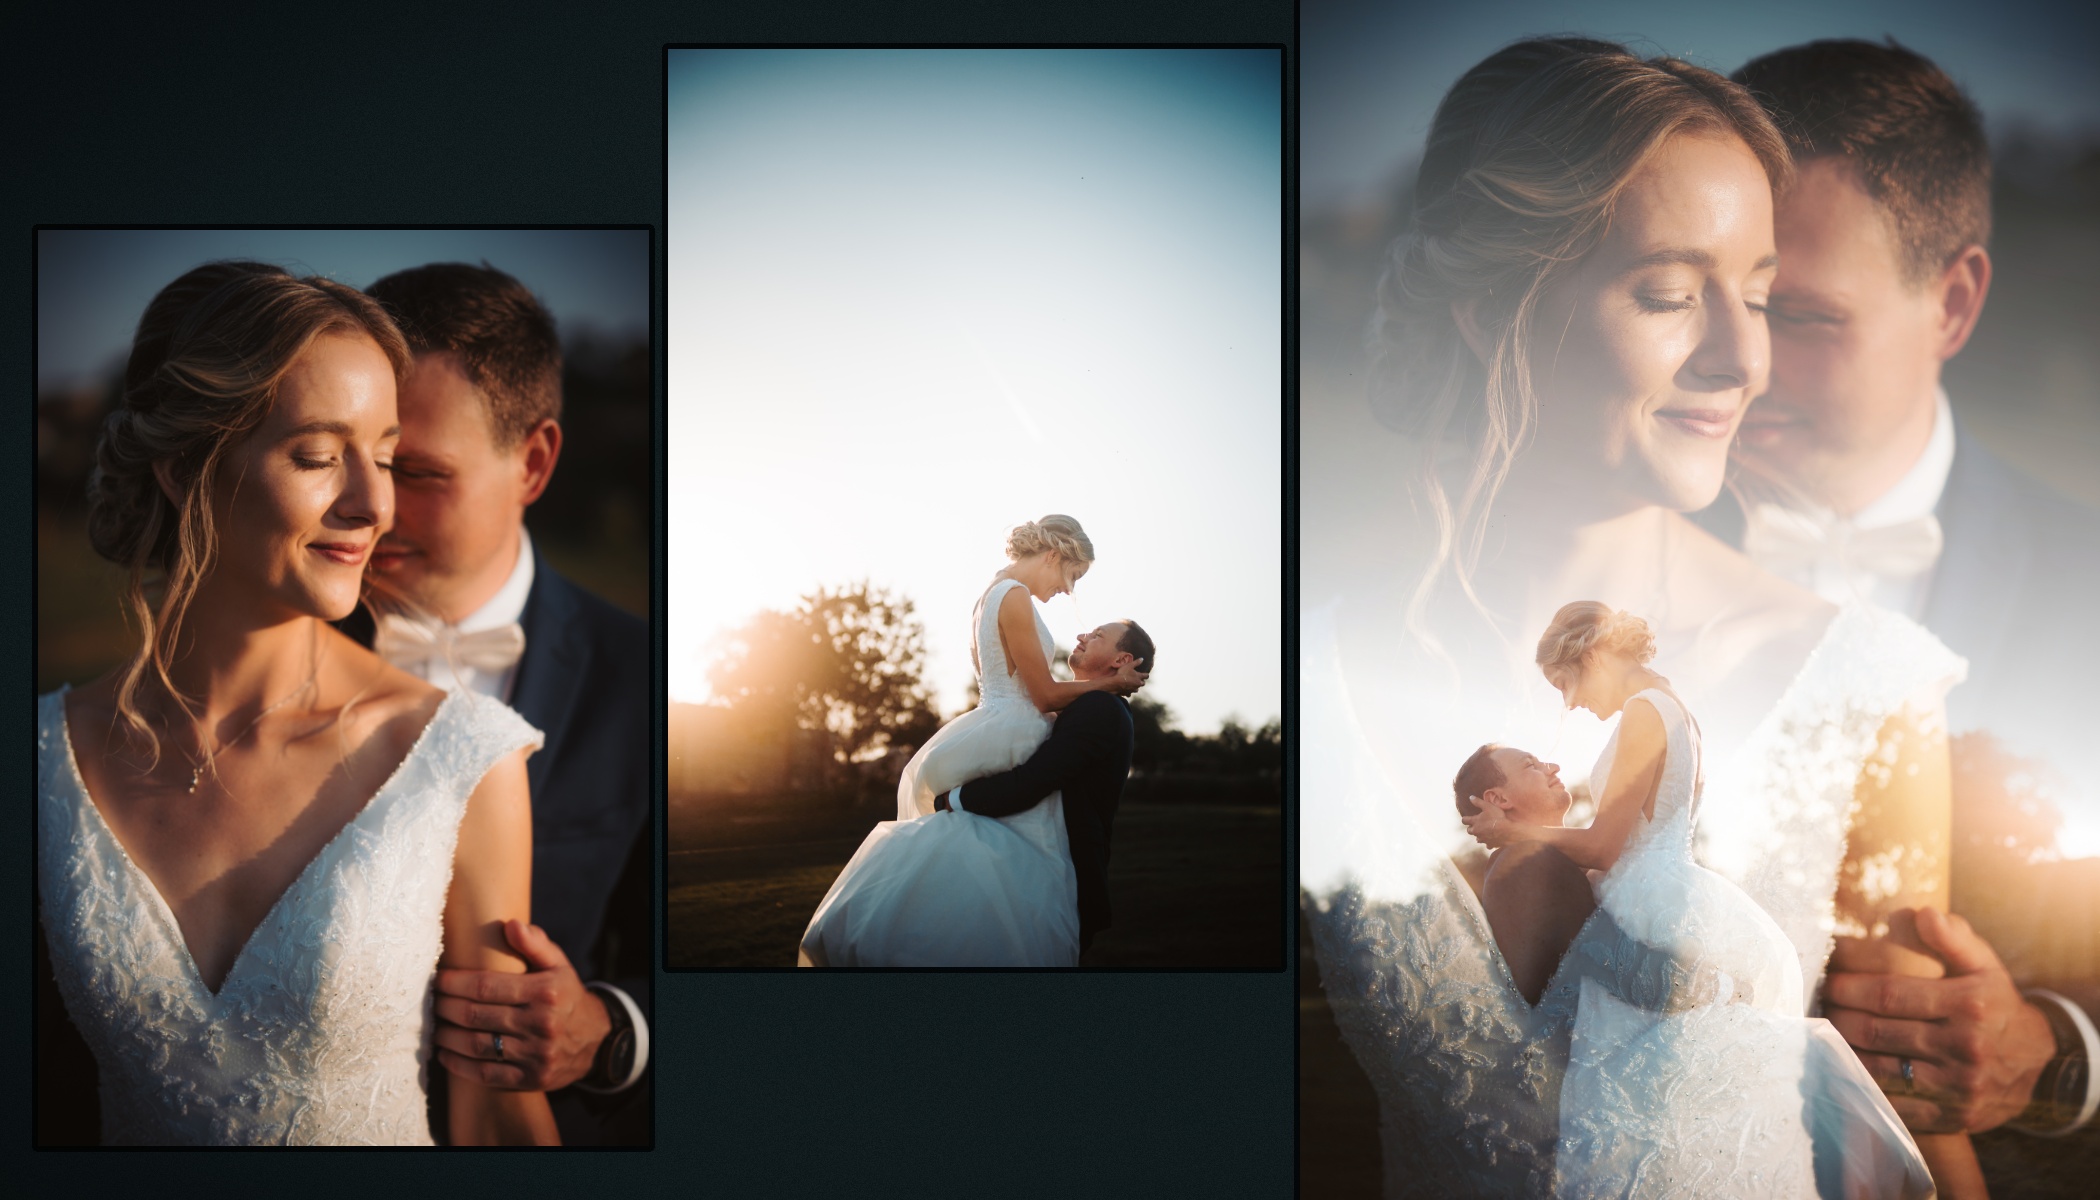 Creative Photo Editing for Wedding Photos